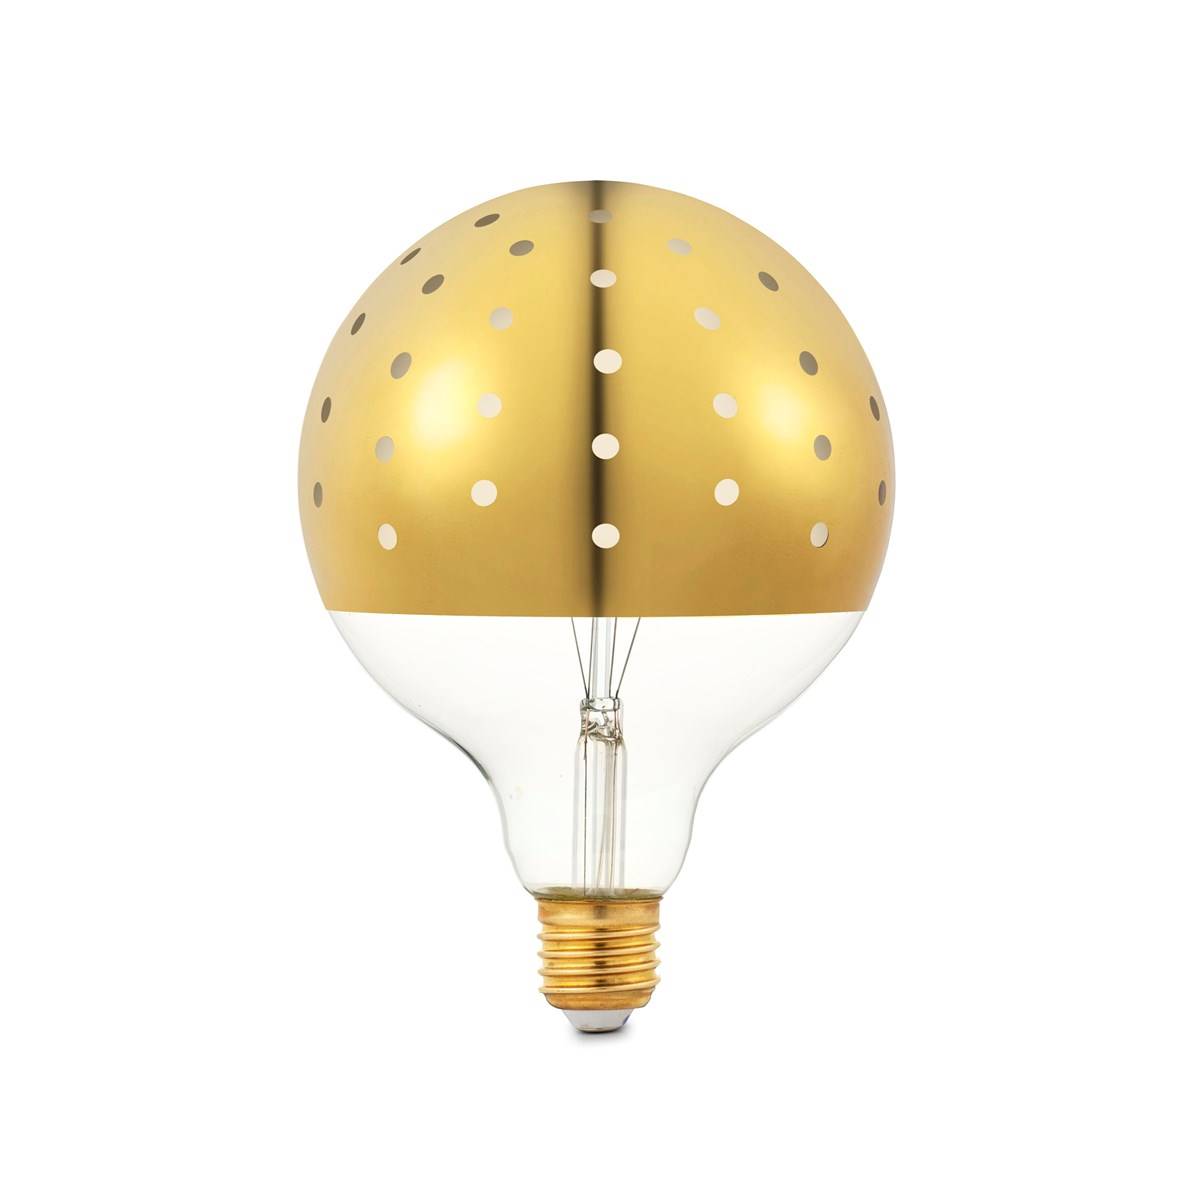 Bombilla LED de estilo vintage con acabado dorado y puntitos